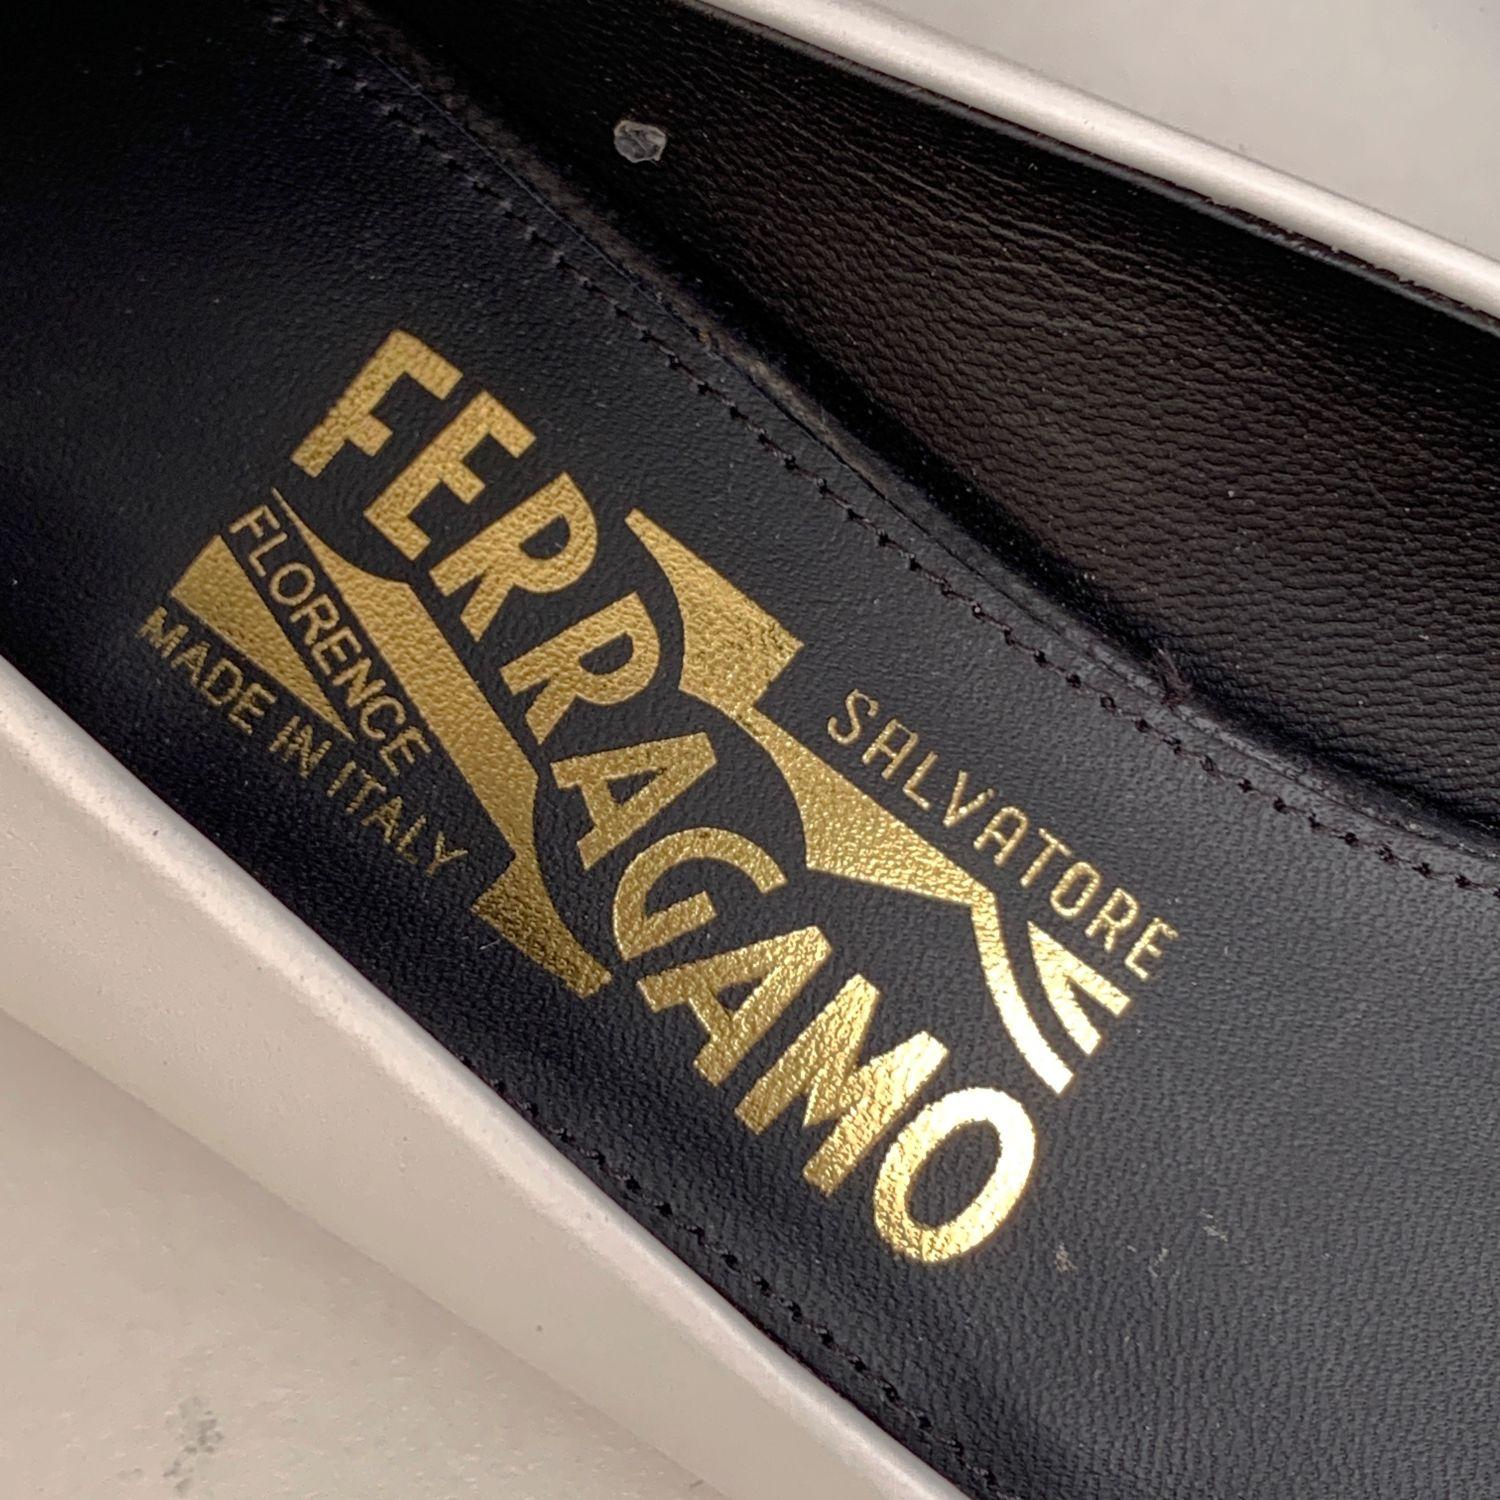 Salvatore Ferragamo White and Black Leather Ivrea Ct Pumps 7.5C 38C In New Condition In Rome, Rome